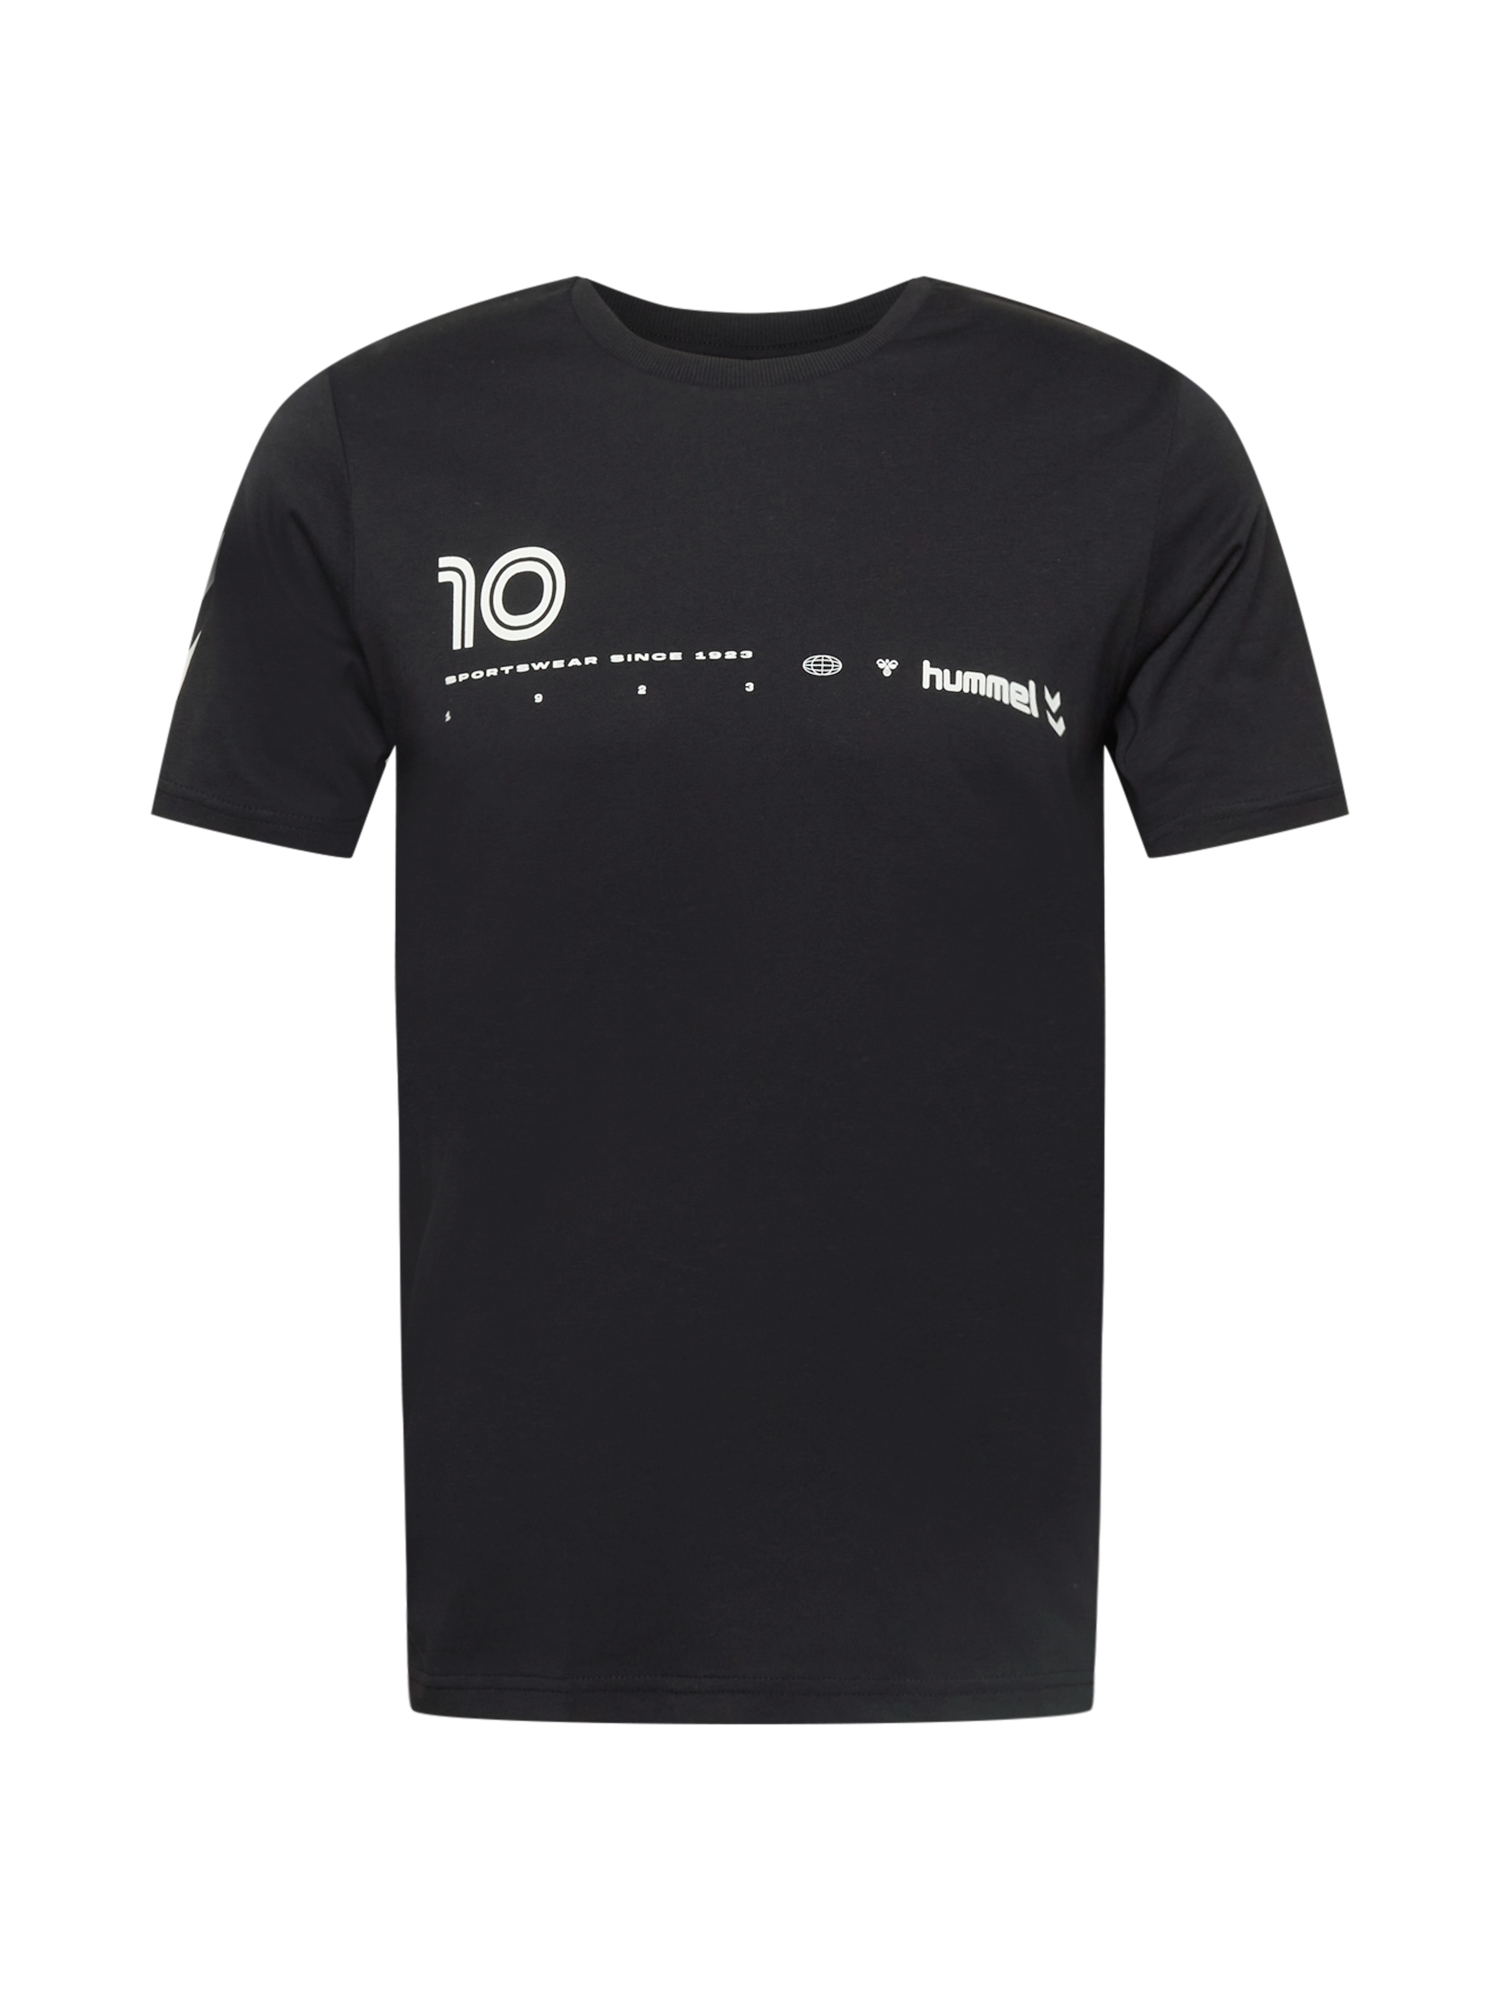 Sport tkBU3 Hummel Koszulka funkcyjna DANI w kolorze Czarnym 